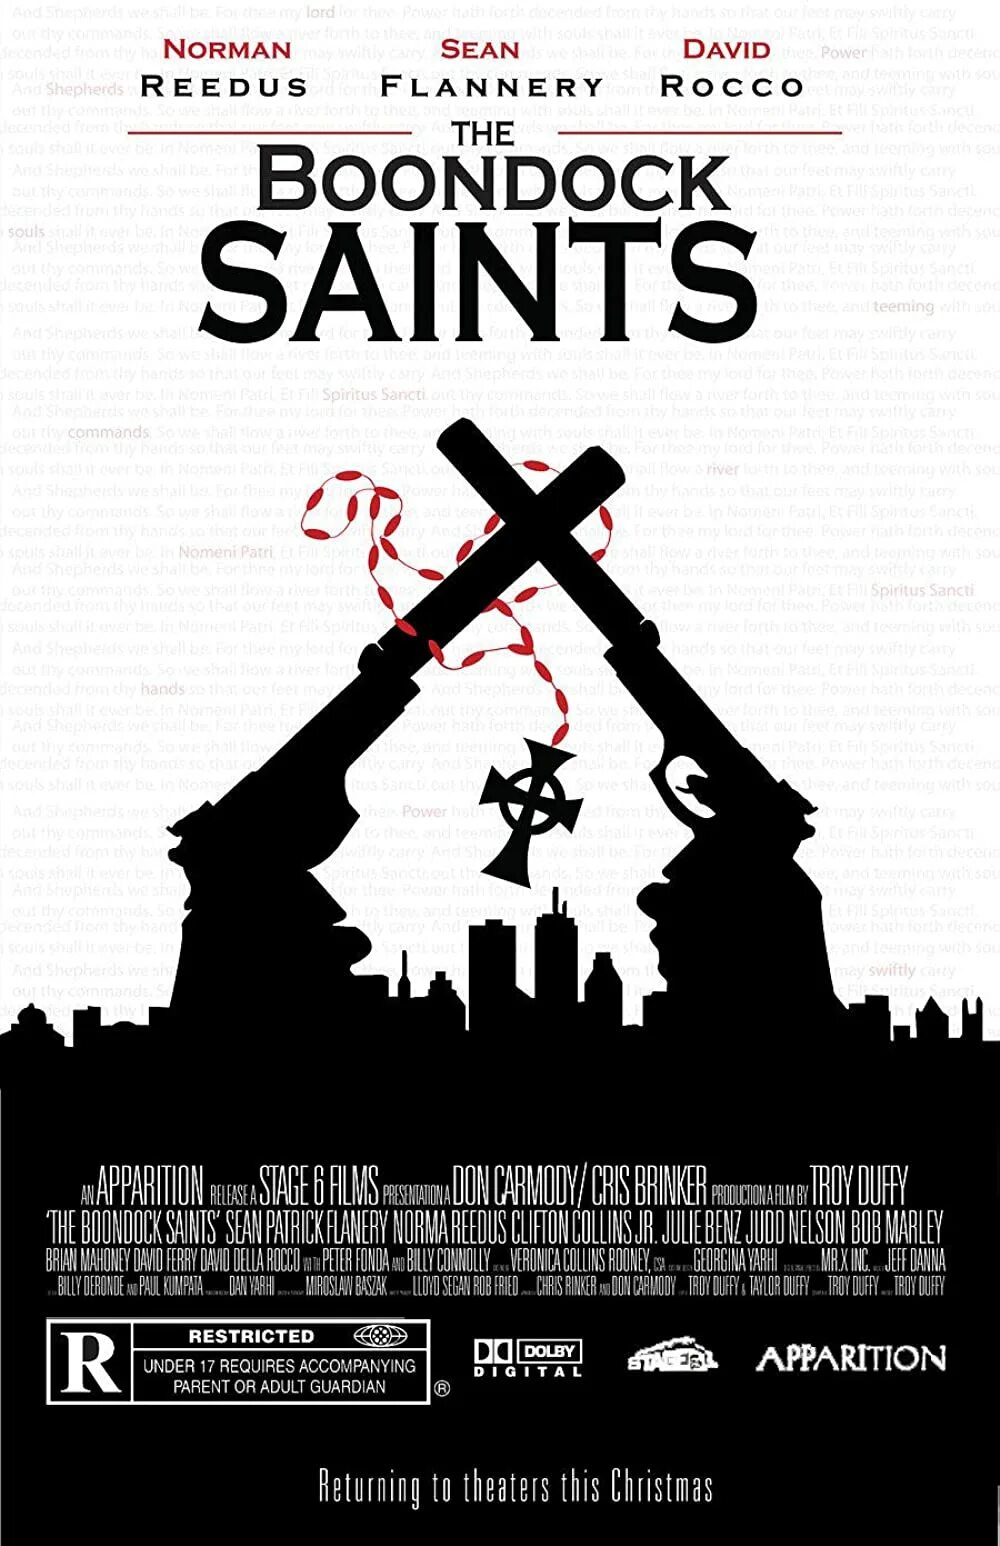 Святые из трущоб лучшее. Святые из Бундока (1999). The Boondock Saints, 1999 poster. Святые из трущоб.